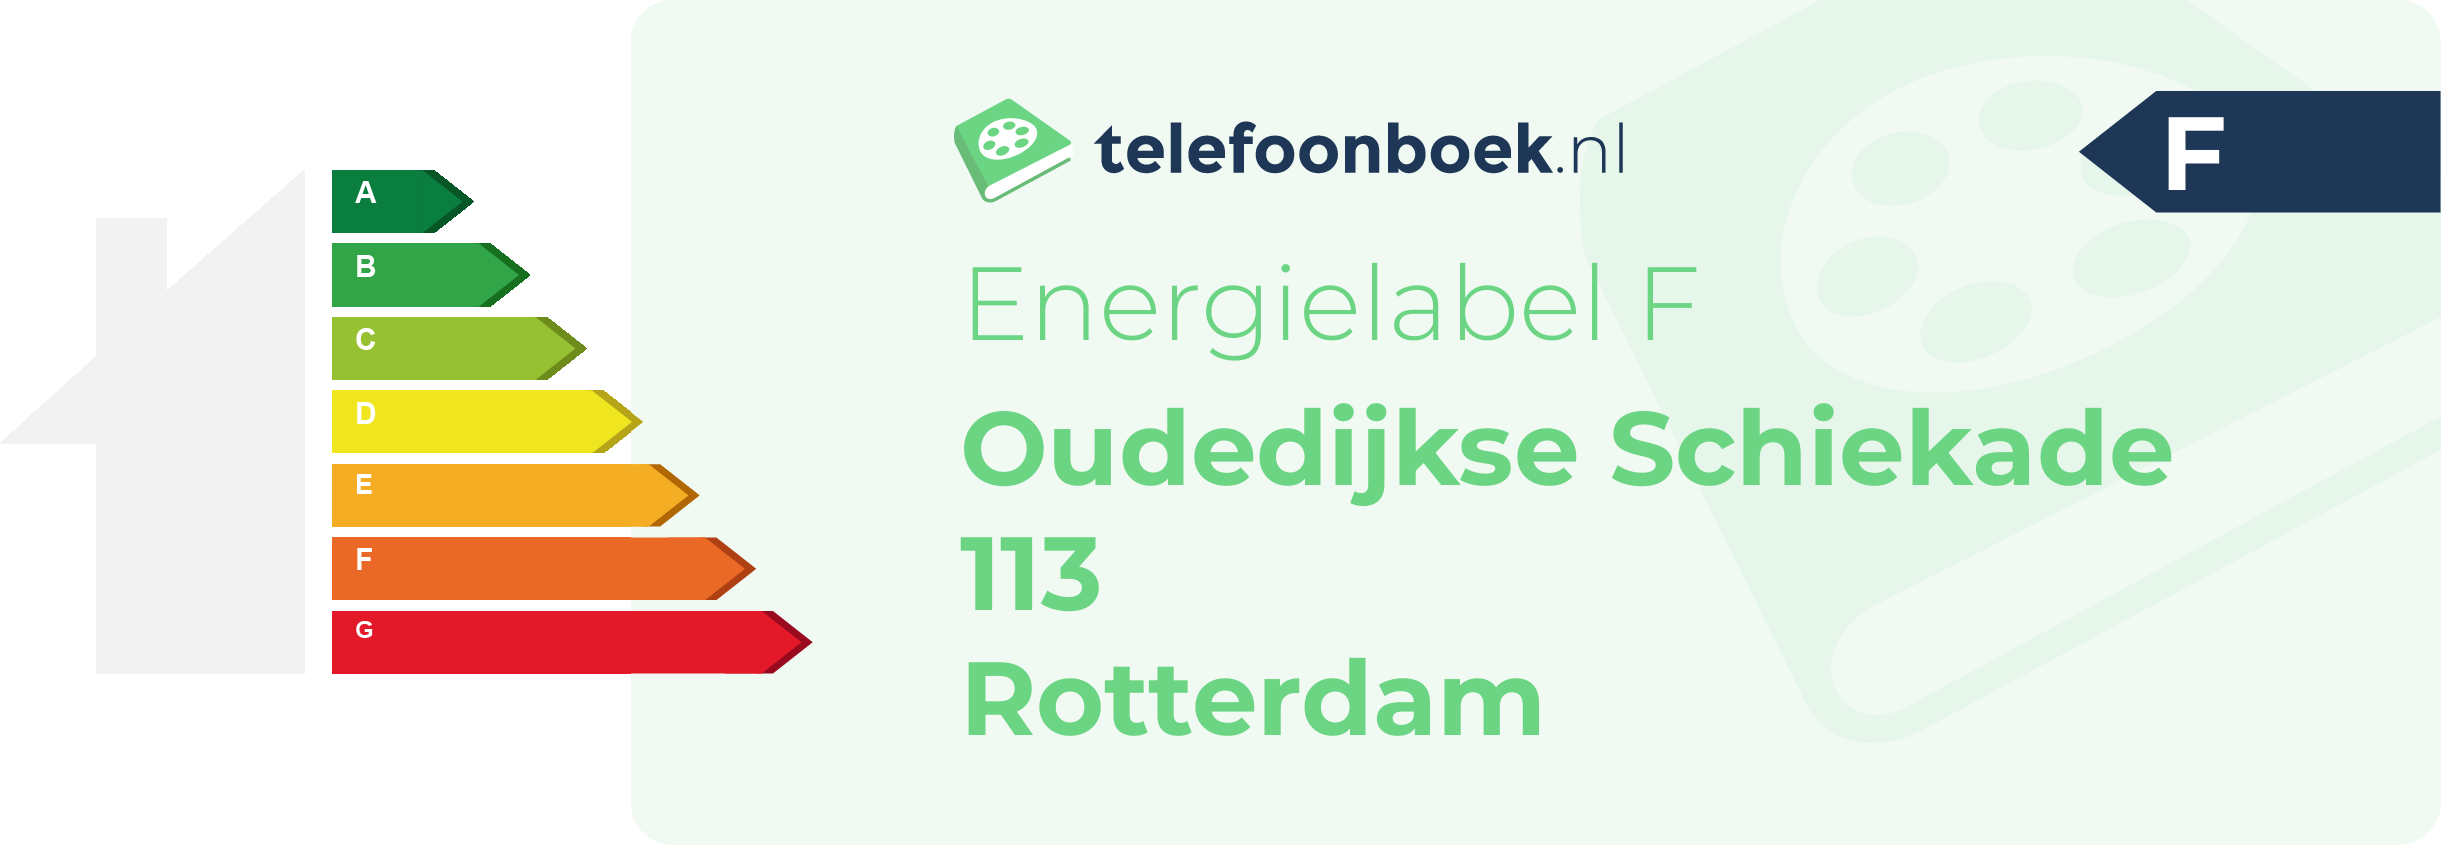 Energielabel Oudedijkse Schiekade 113 Rotterdam